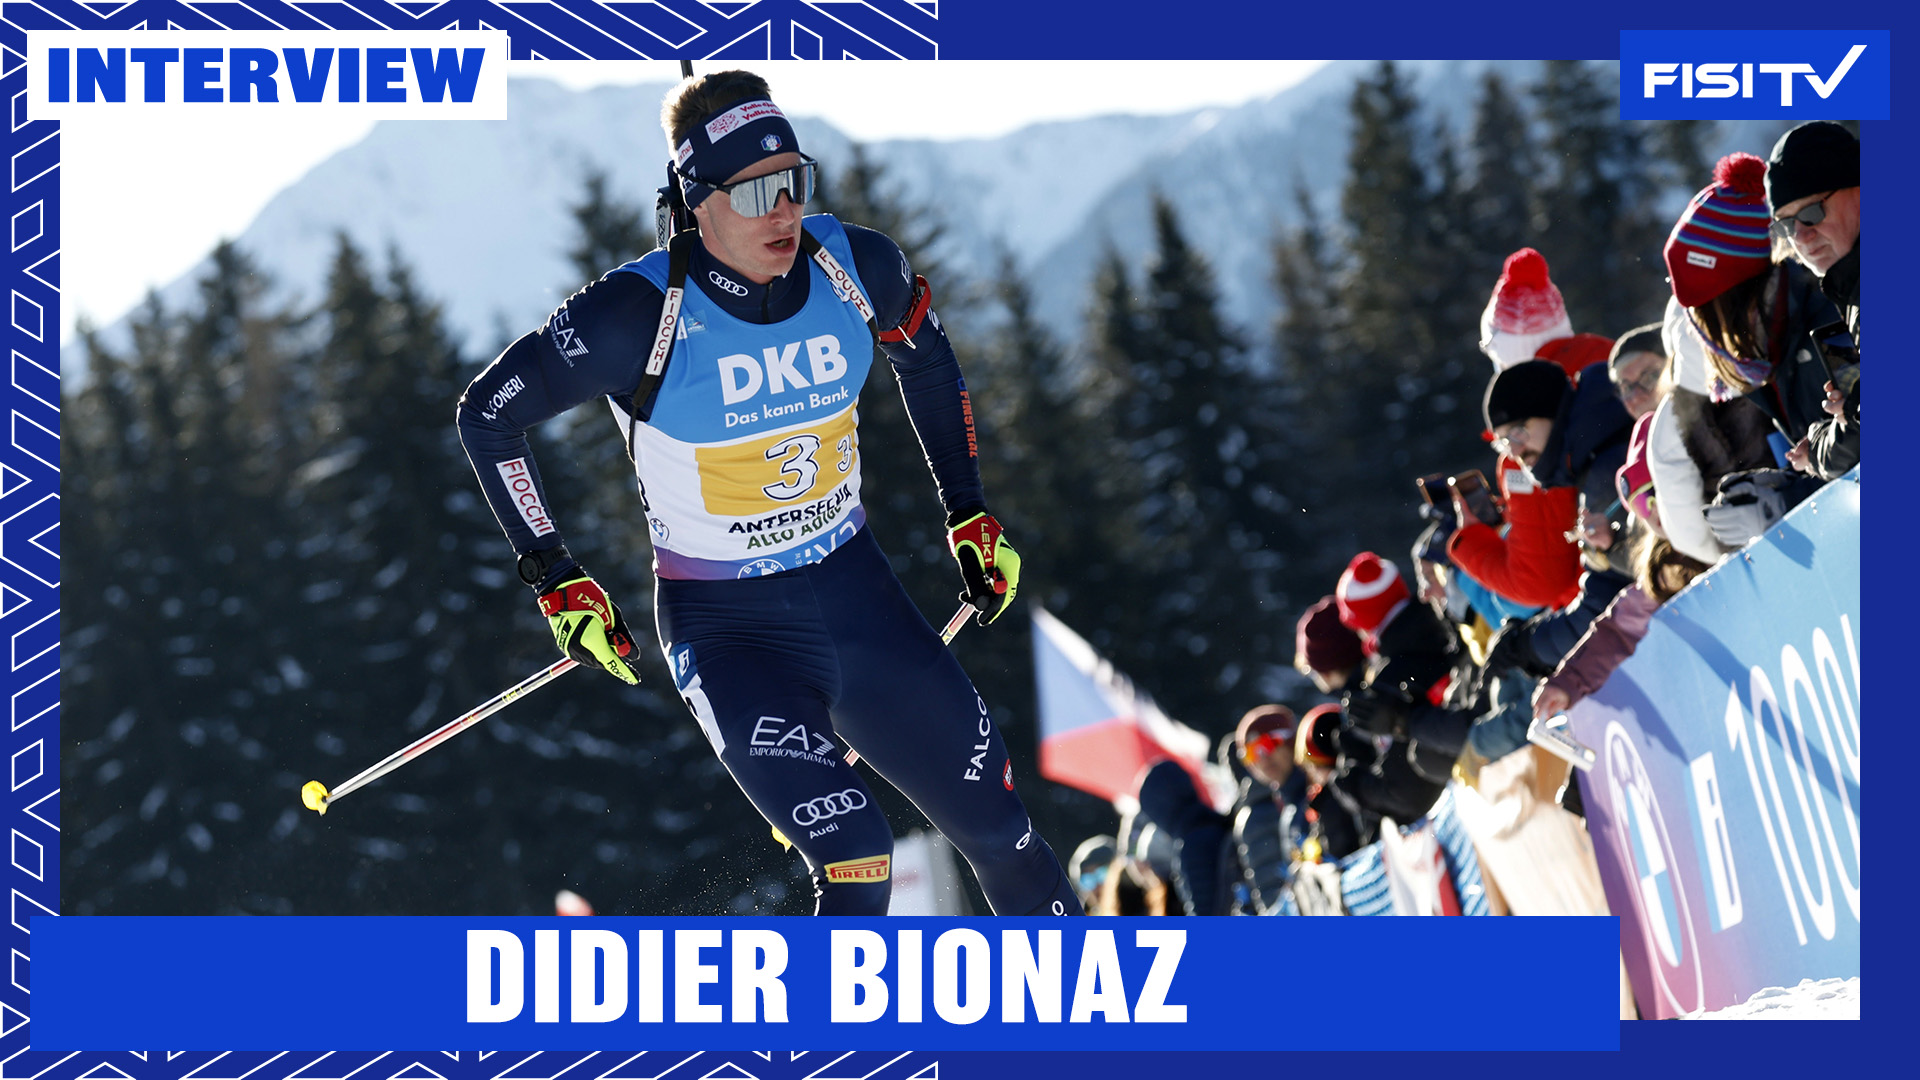 Didier Bionaz | “Oggi è stata una giornata davvero speciale” | FISI TV